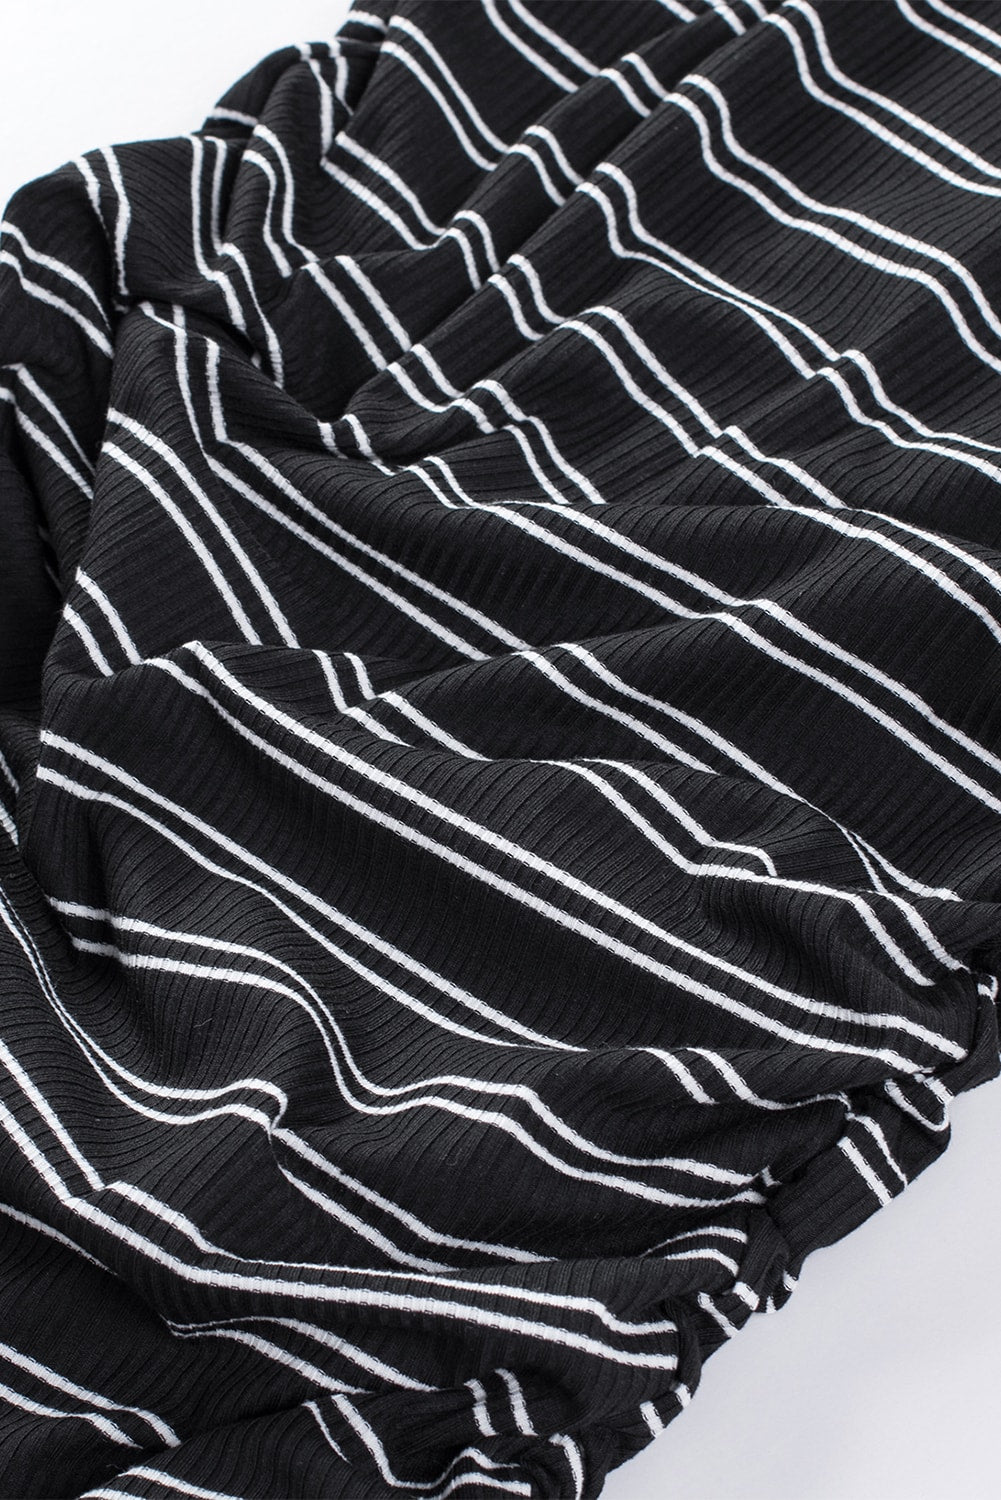 Black Striped Print Crew Neck Tank Mini Dress Mini Dresses JT's Designer Fashion